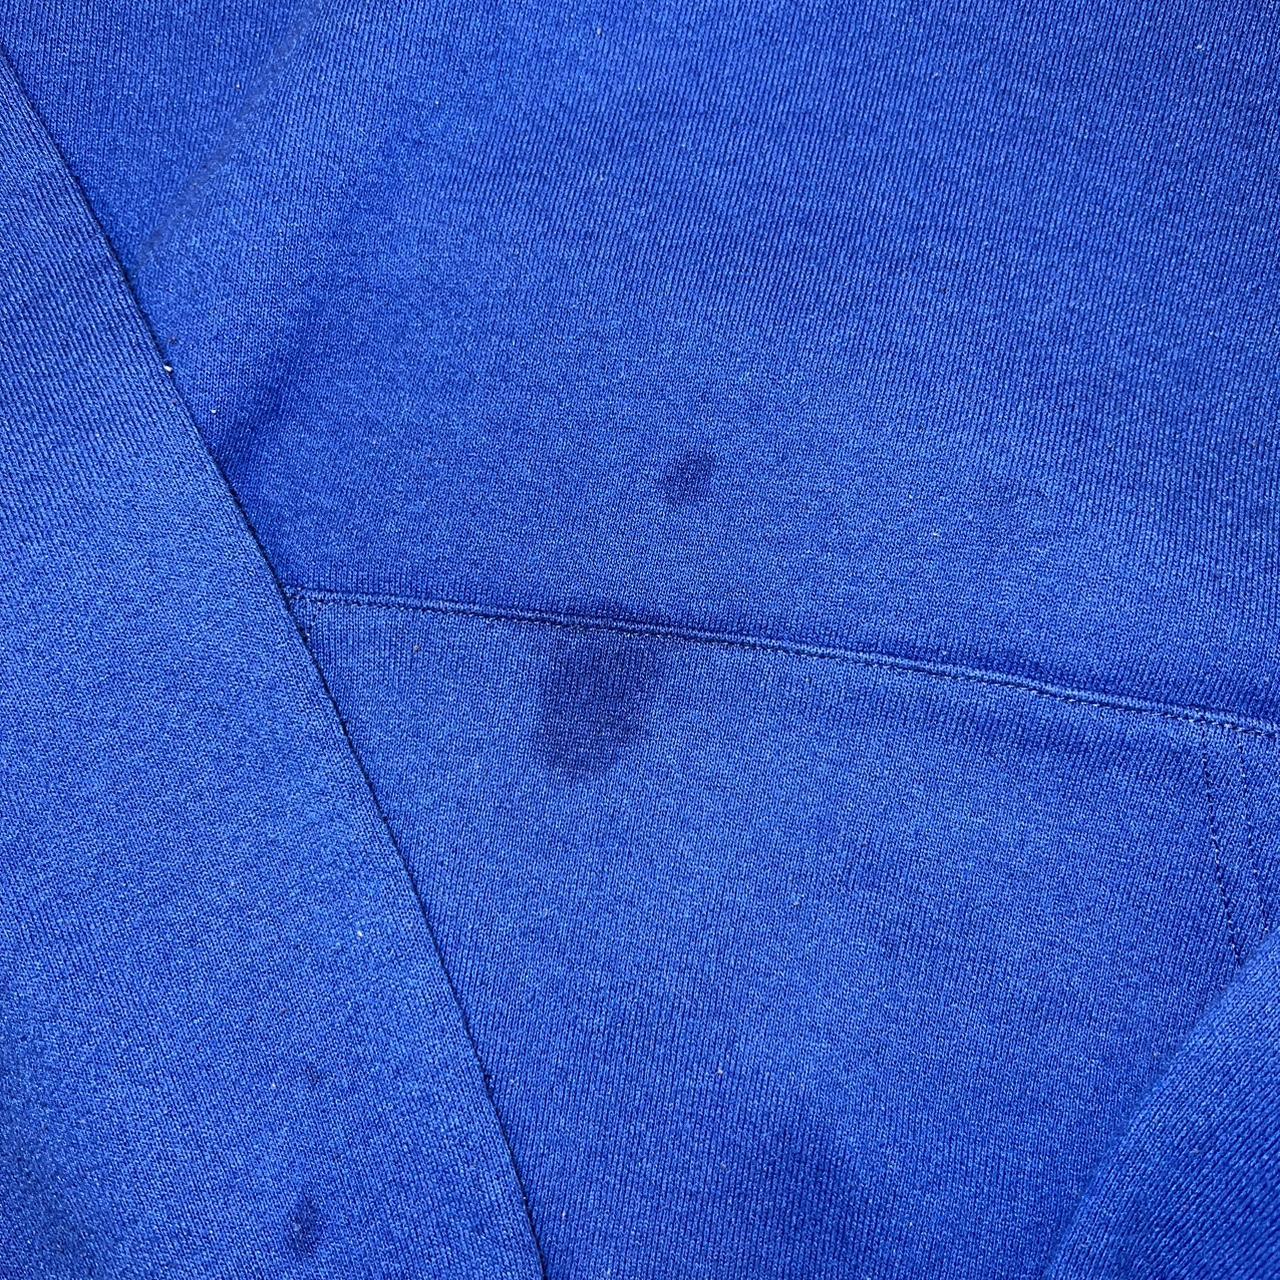 Blue Russel hoodie #blue #russel #hoodie - Depop